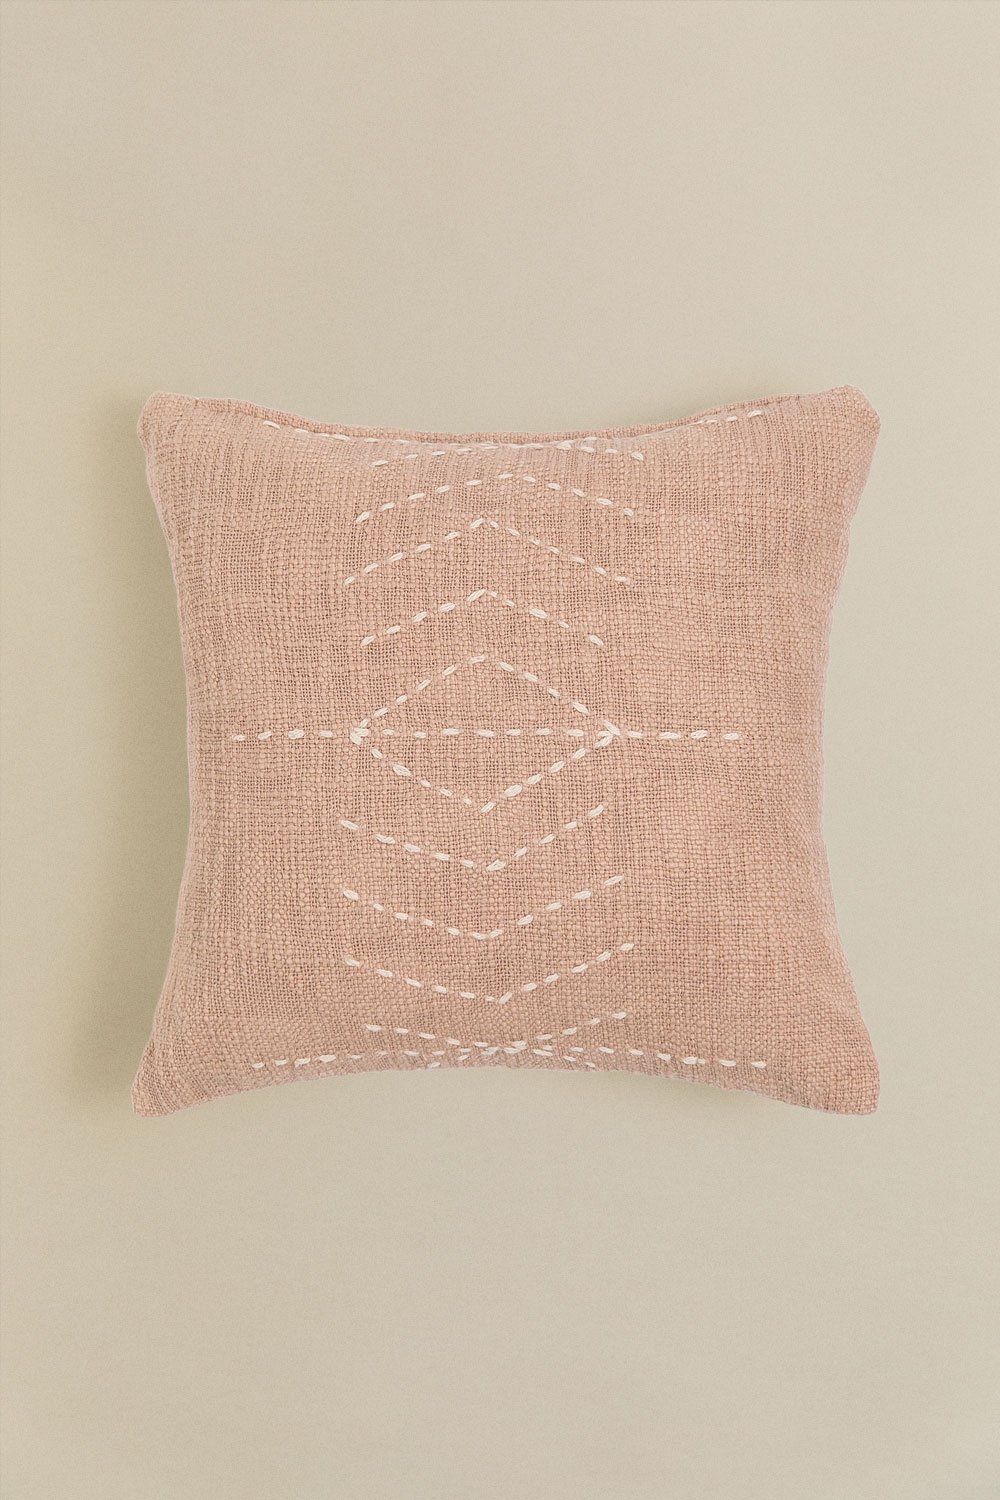 Cuscino quadrato in cotone (40x40 cm) Ceara, immagine della galleria 1